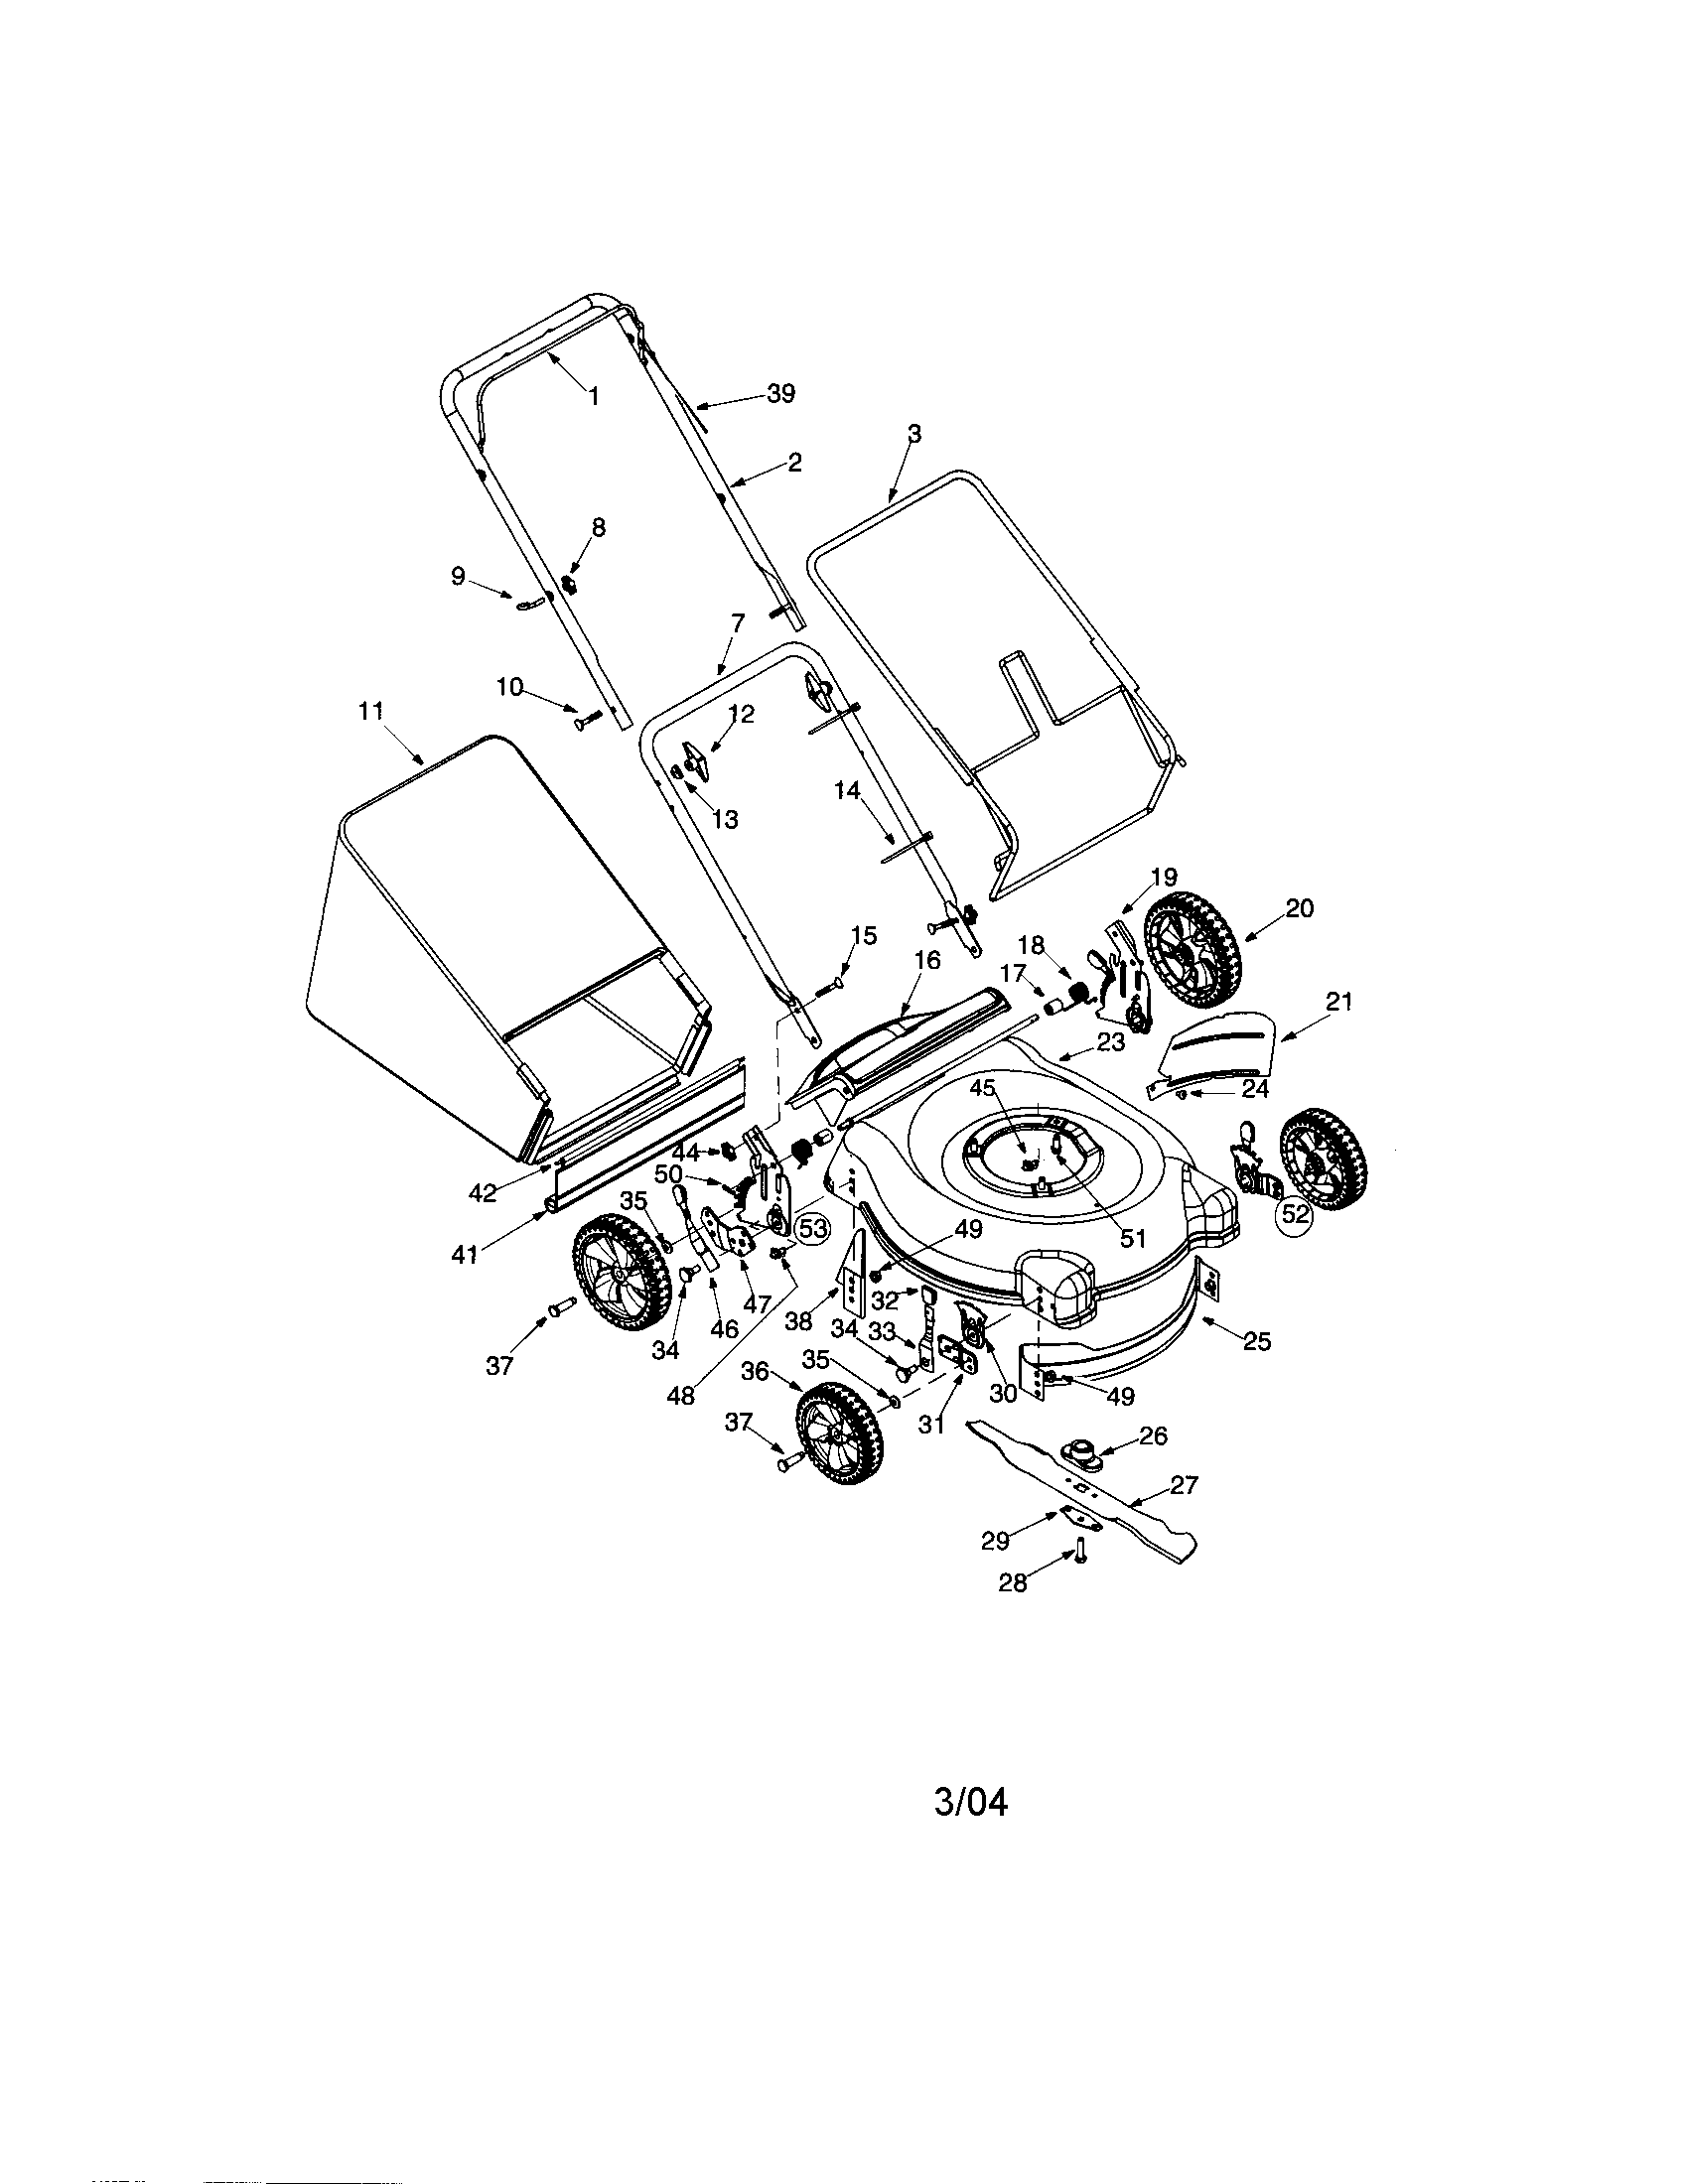 bolens lawn mower parts diagram model 13am762f765